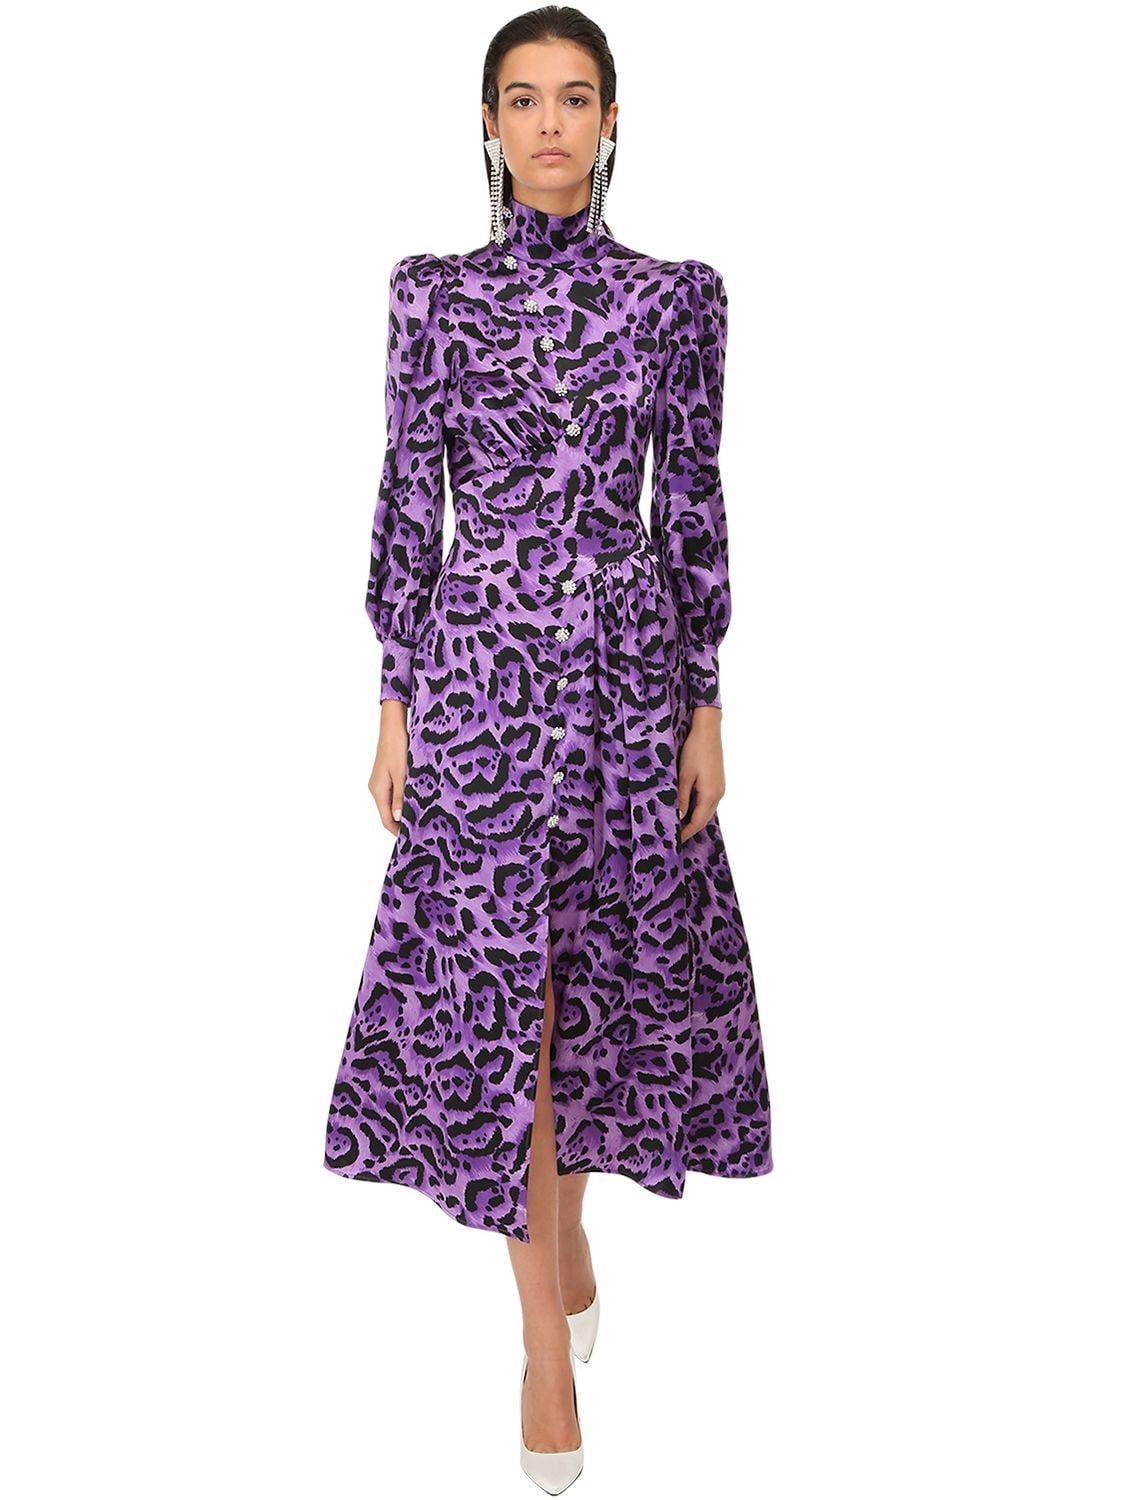 lilac leopard print dress